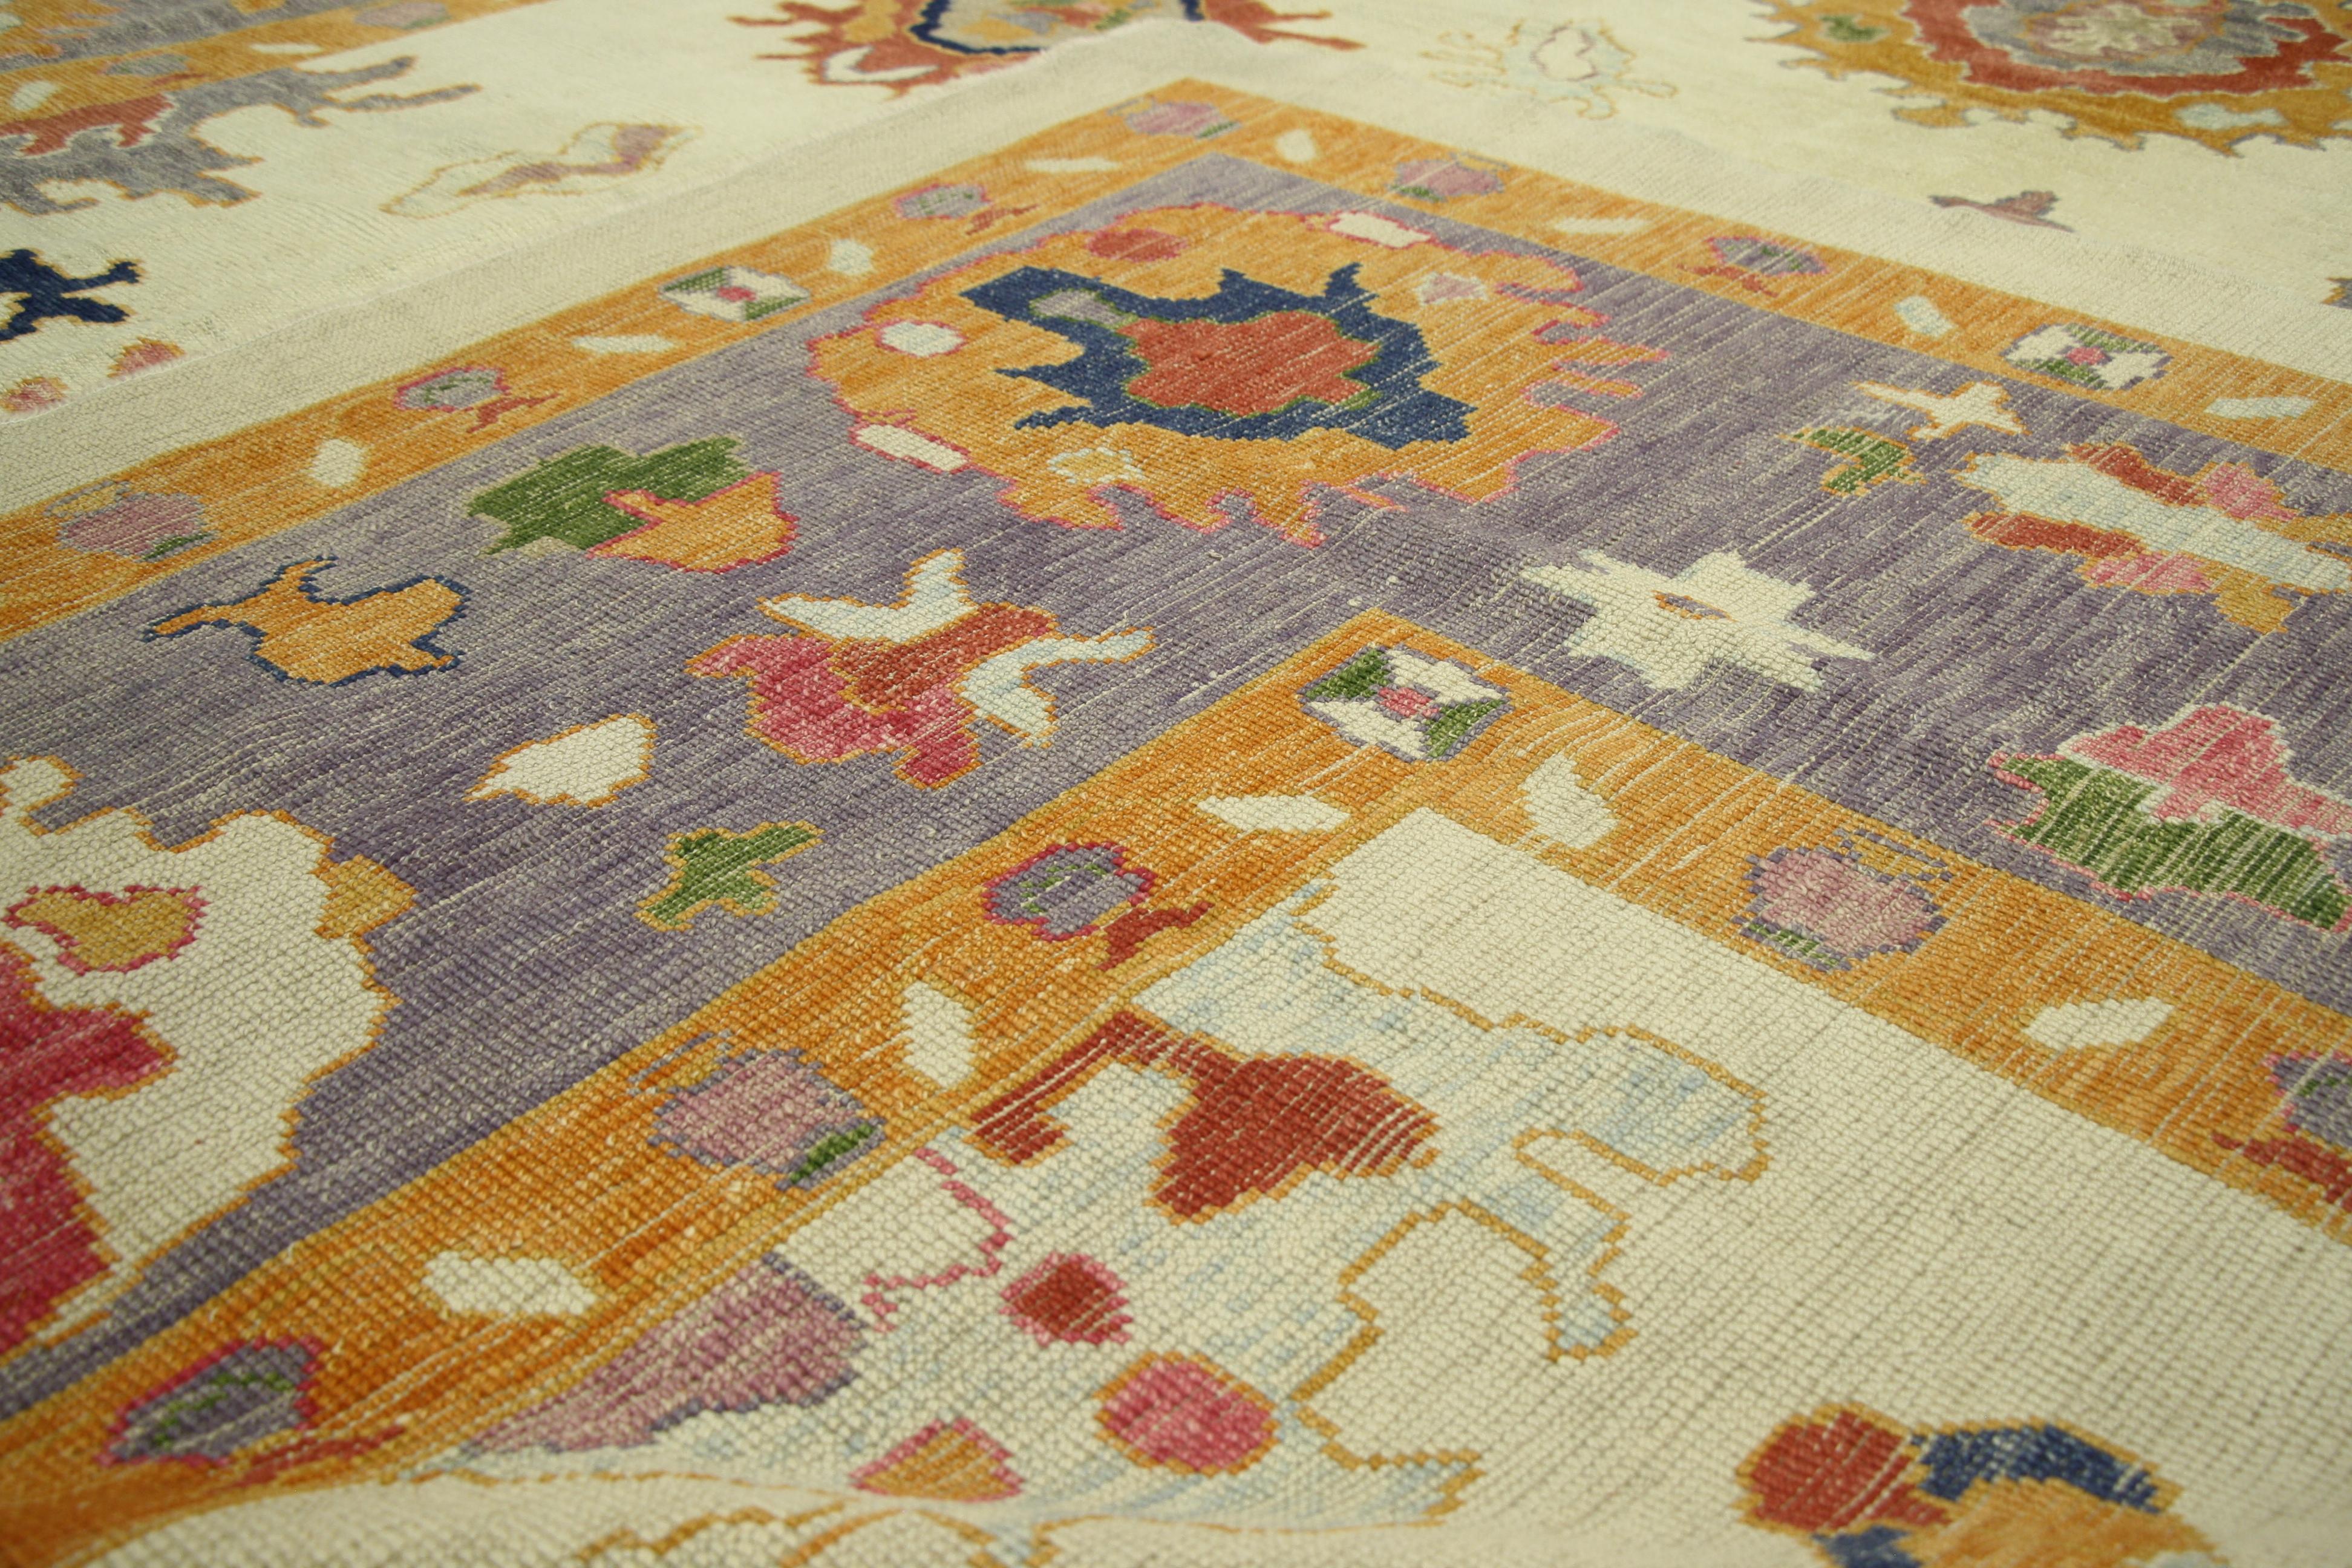 52379, neuer türkischer Oushak-Teppich mit Pariser Stil und großflächigem geometrischem Muster. Dieser handgeknüpfte Teppich aus türkischer Oushak-Wolle im Pariser Stil ist elegant und verspielt und eignet sich ideal für fast jedes modebewusste